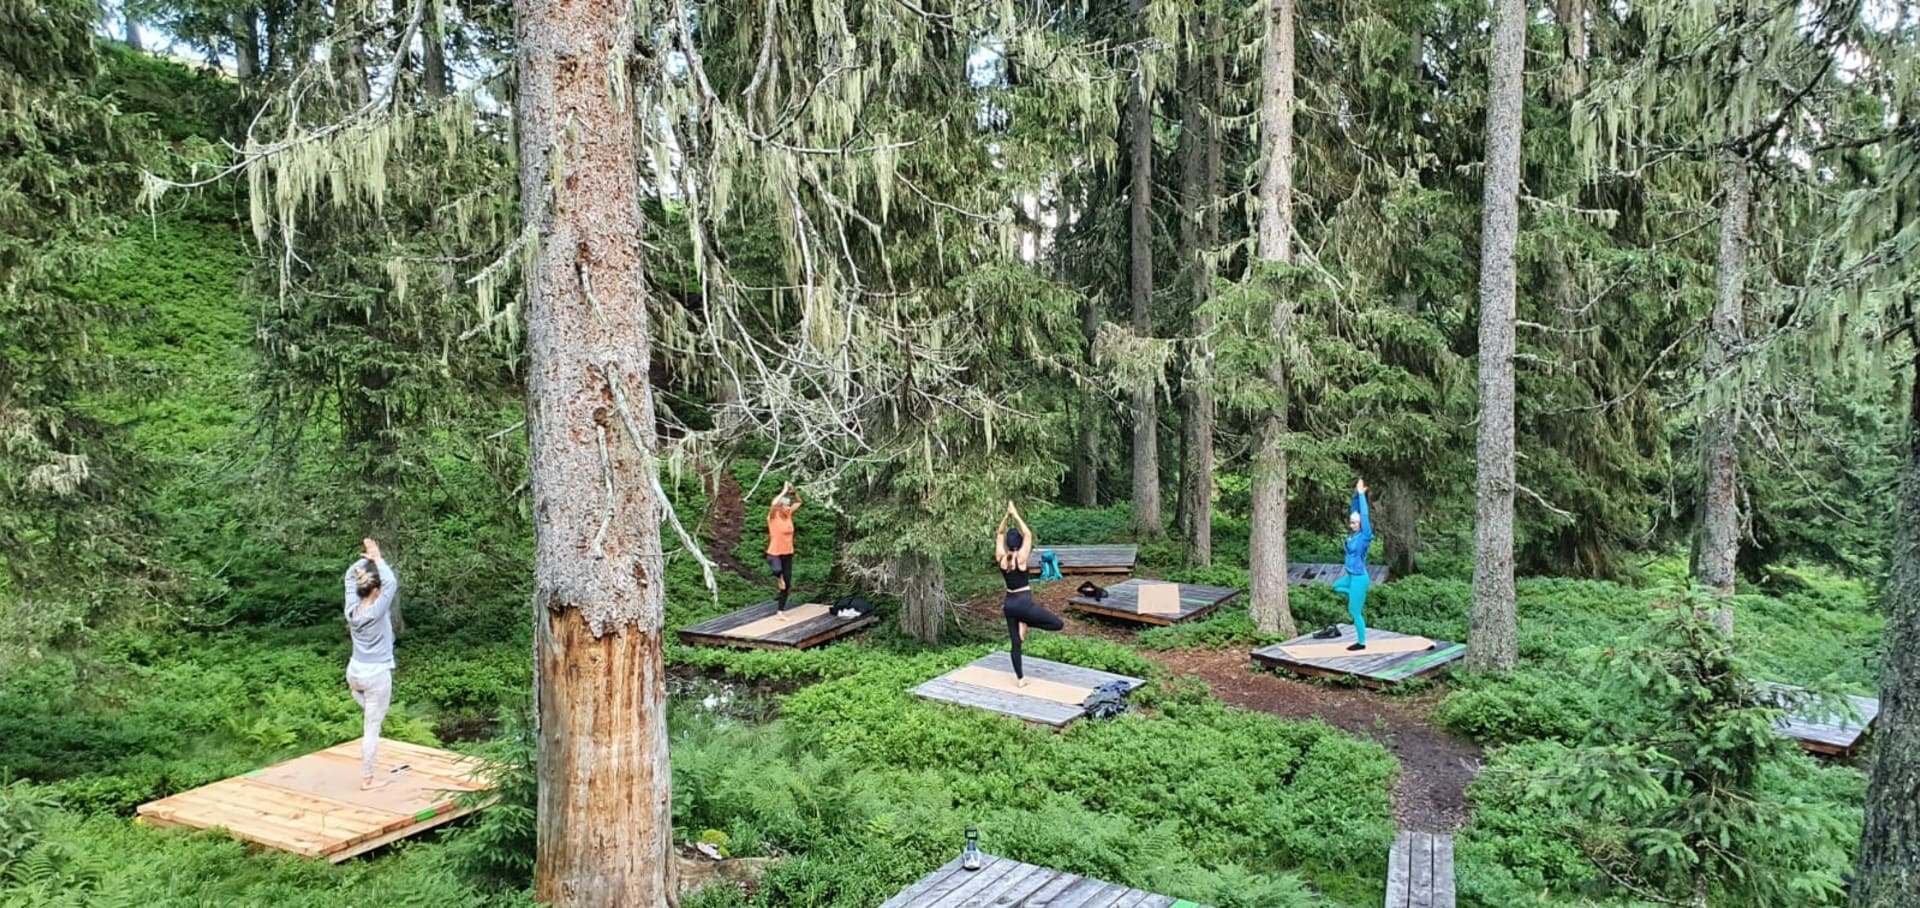 Oblíbené je také místo v lese, kde si můžete například zacvičit jógu